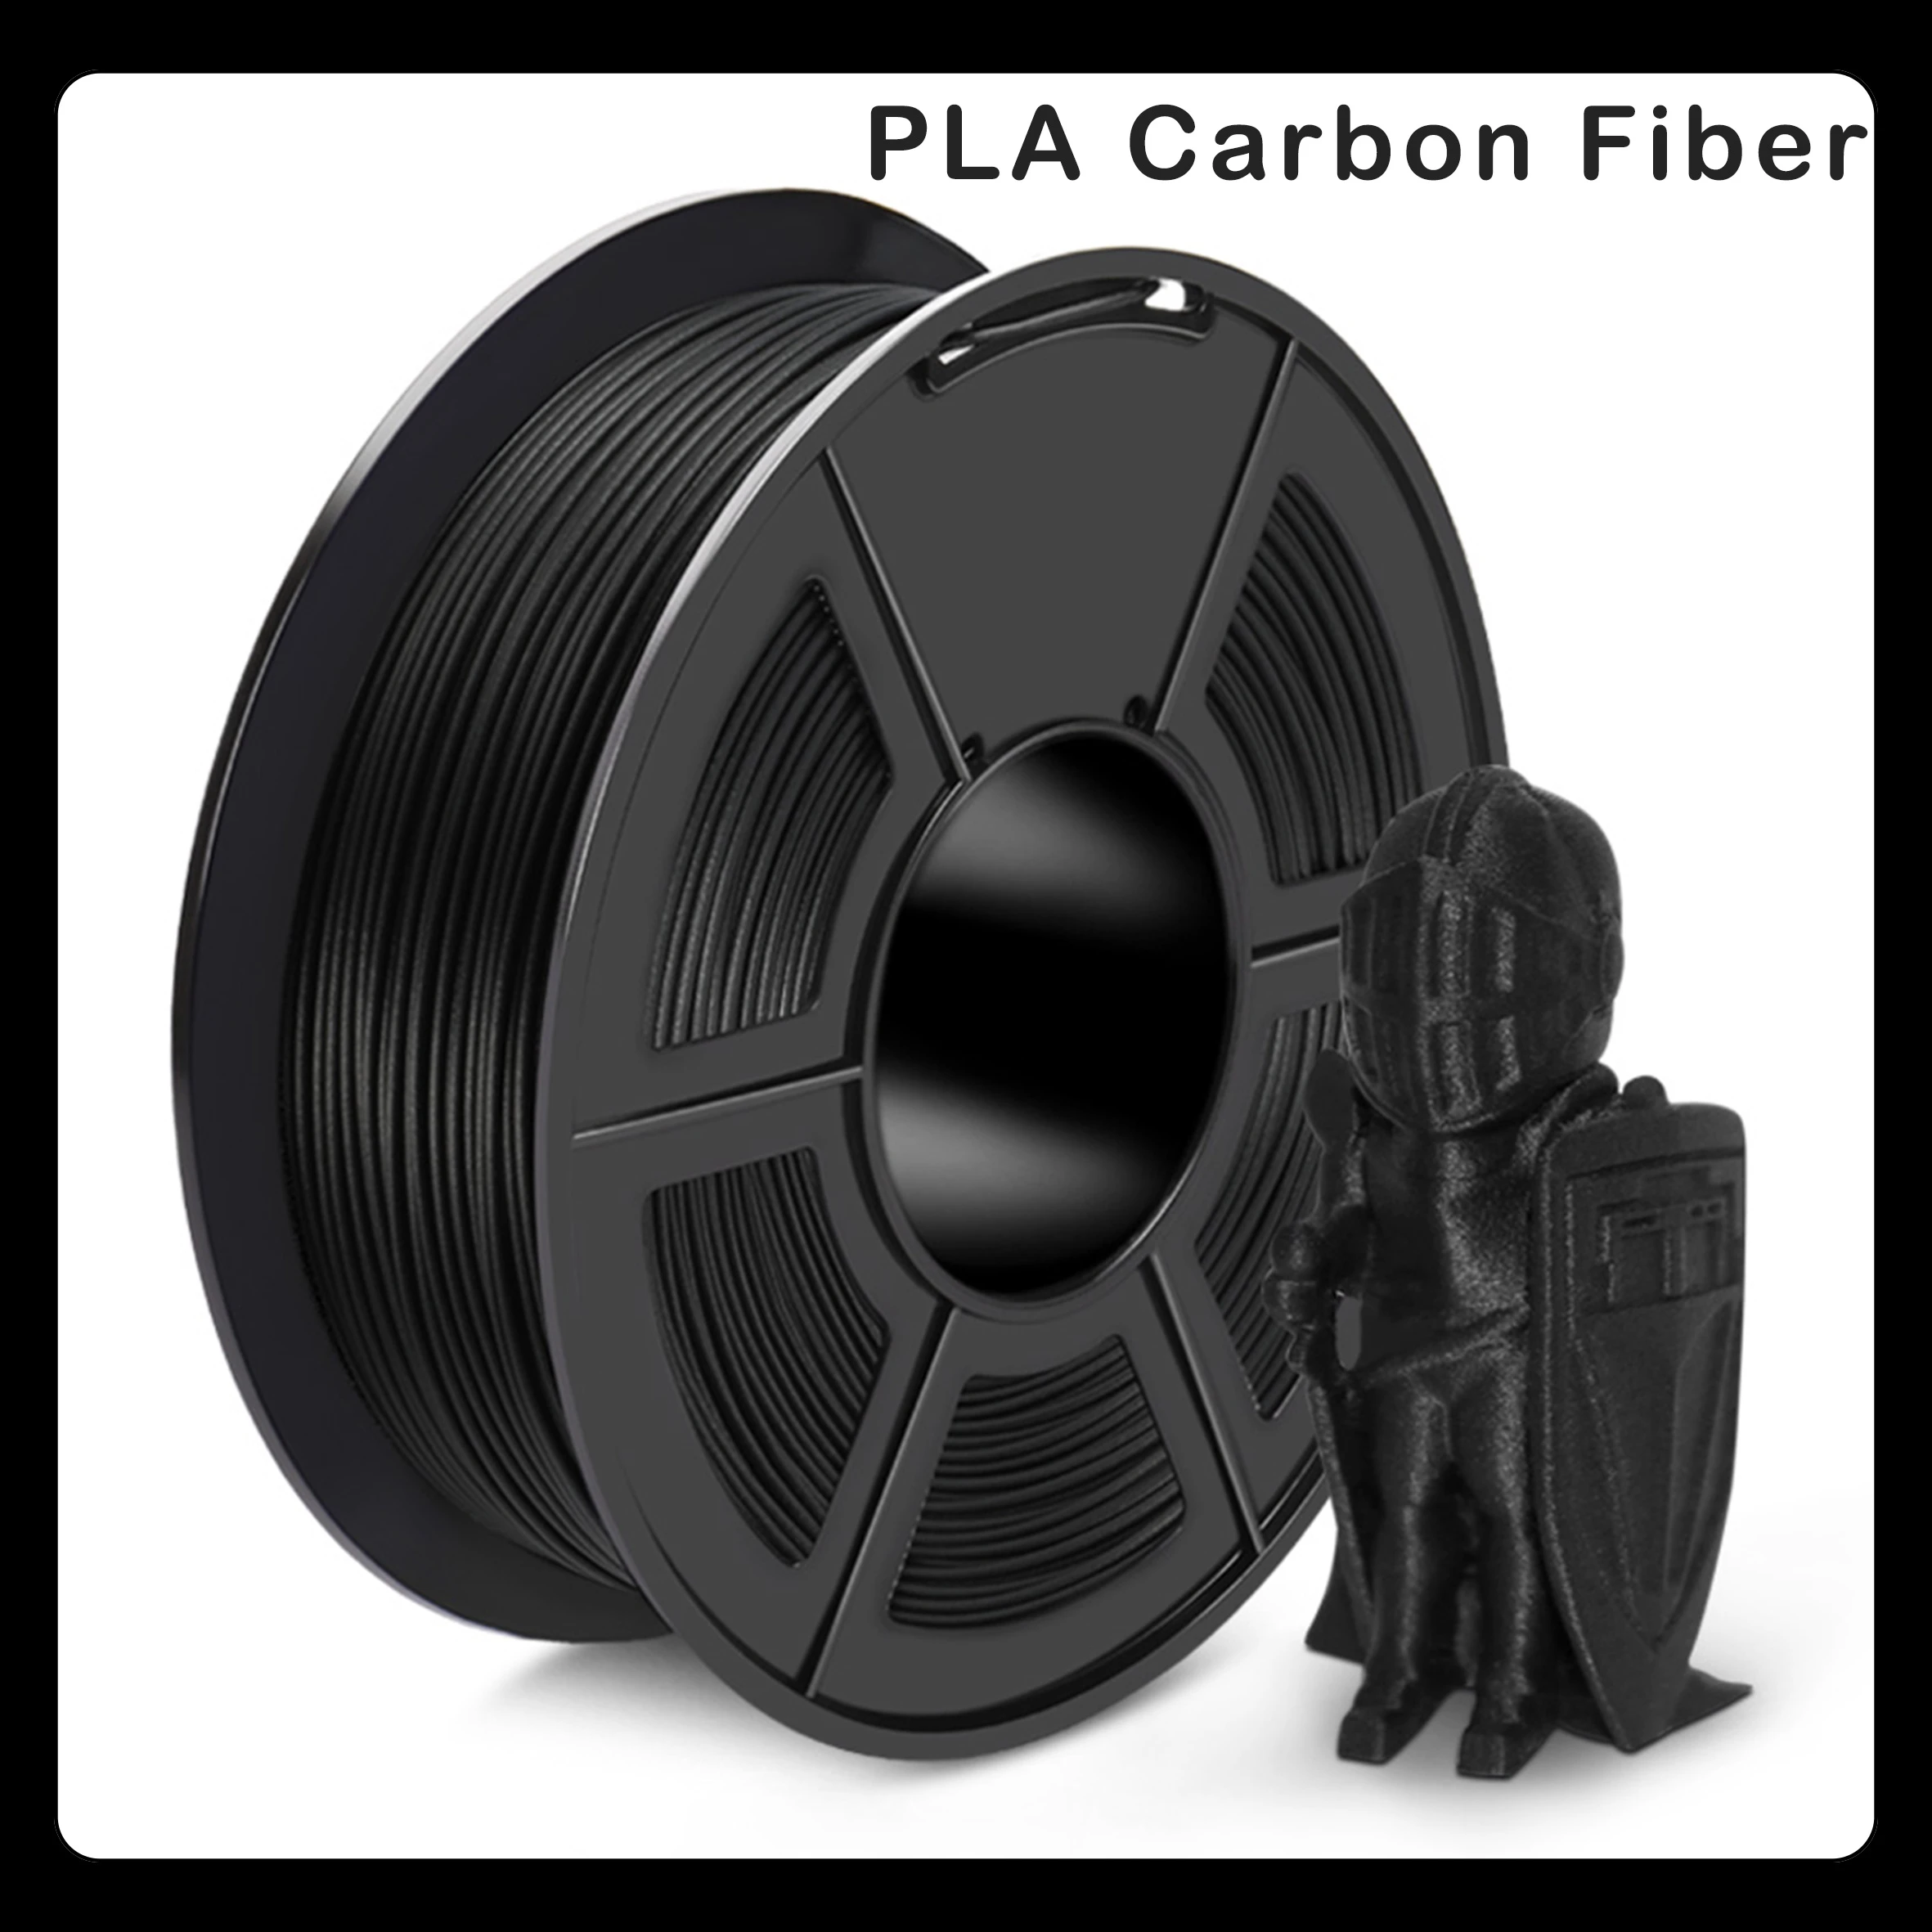 Carbon Fiber PLA Filament 3D Printer Filament For 3D Pen 1.75mm 1kg 3D Printing Materials High Strength Density Free Shipping filament polycarbonate